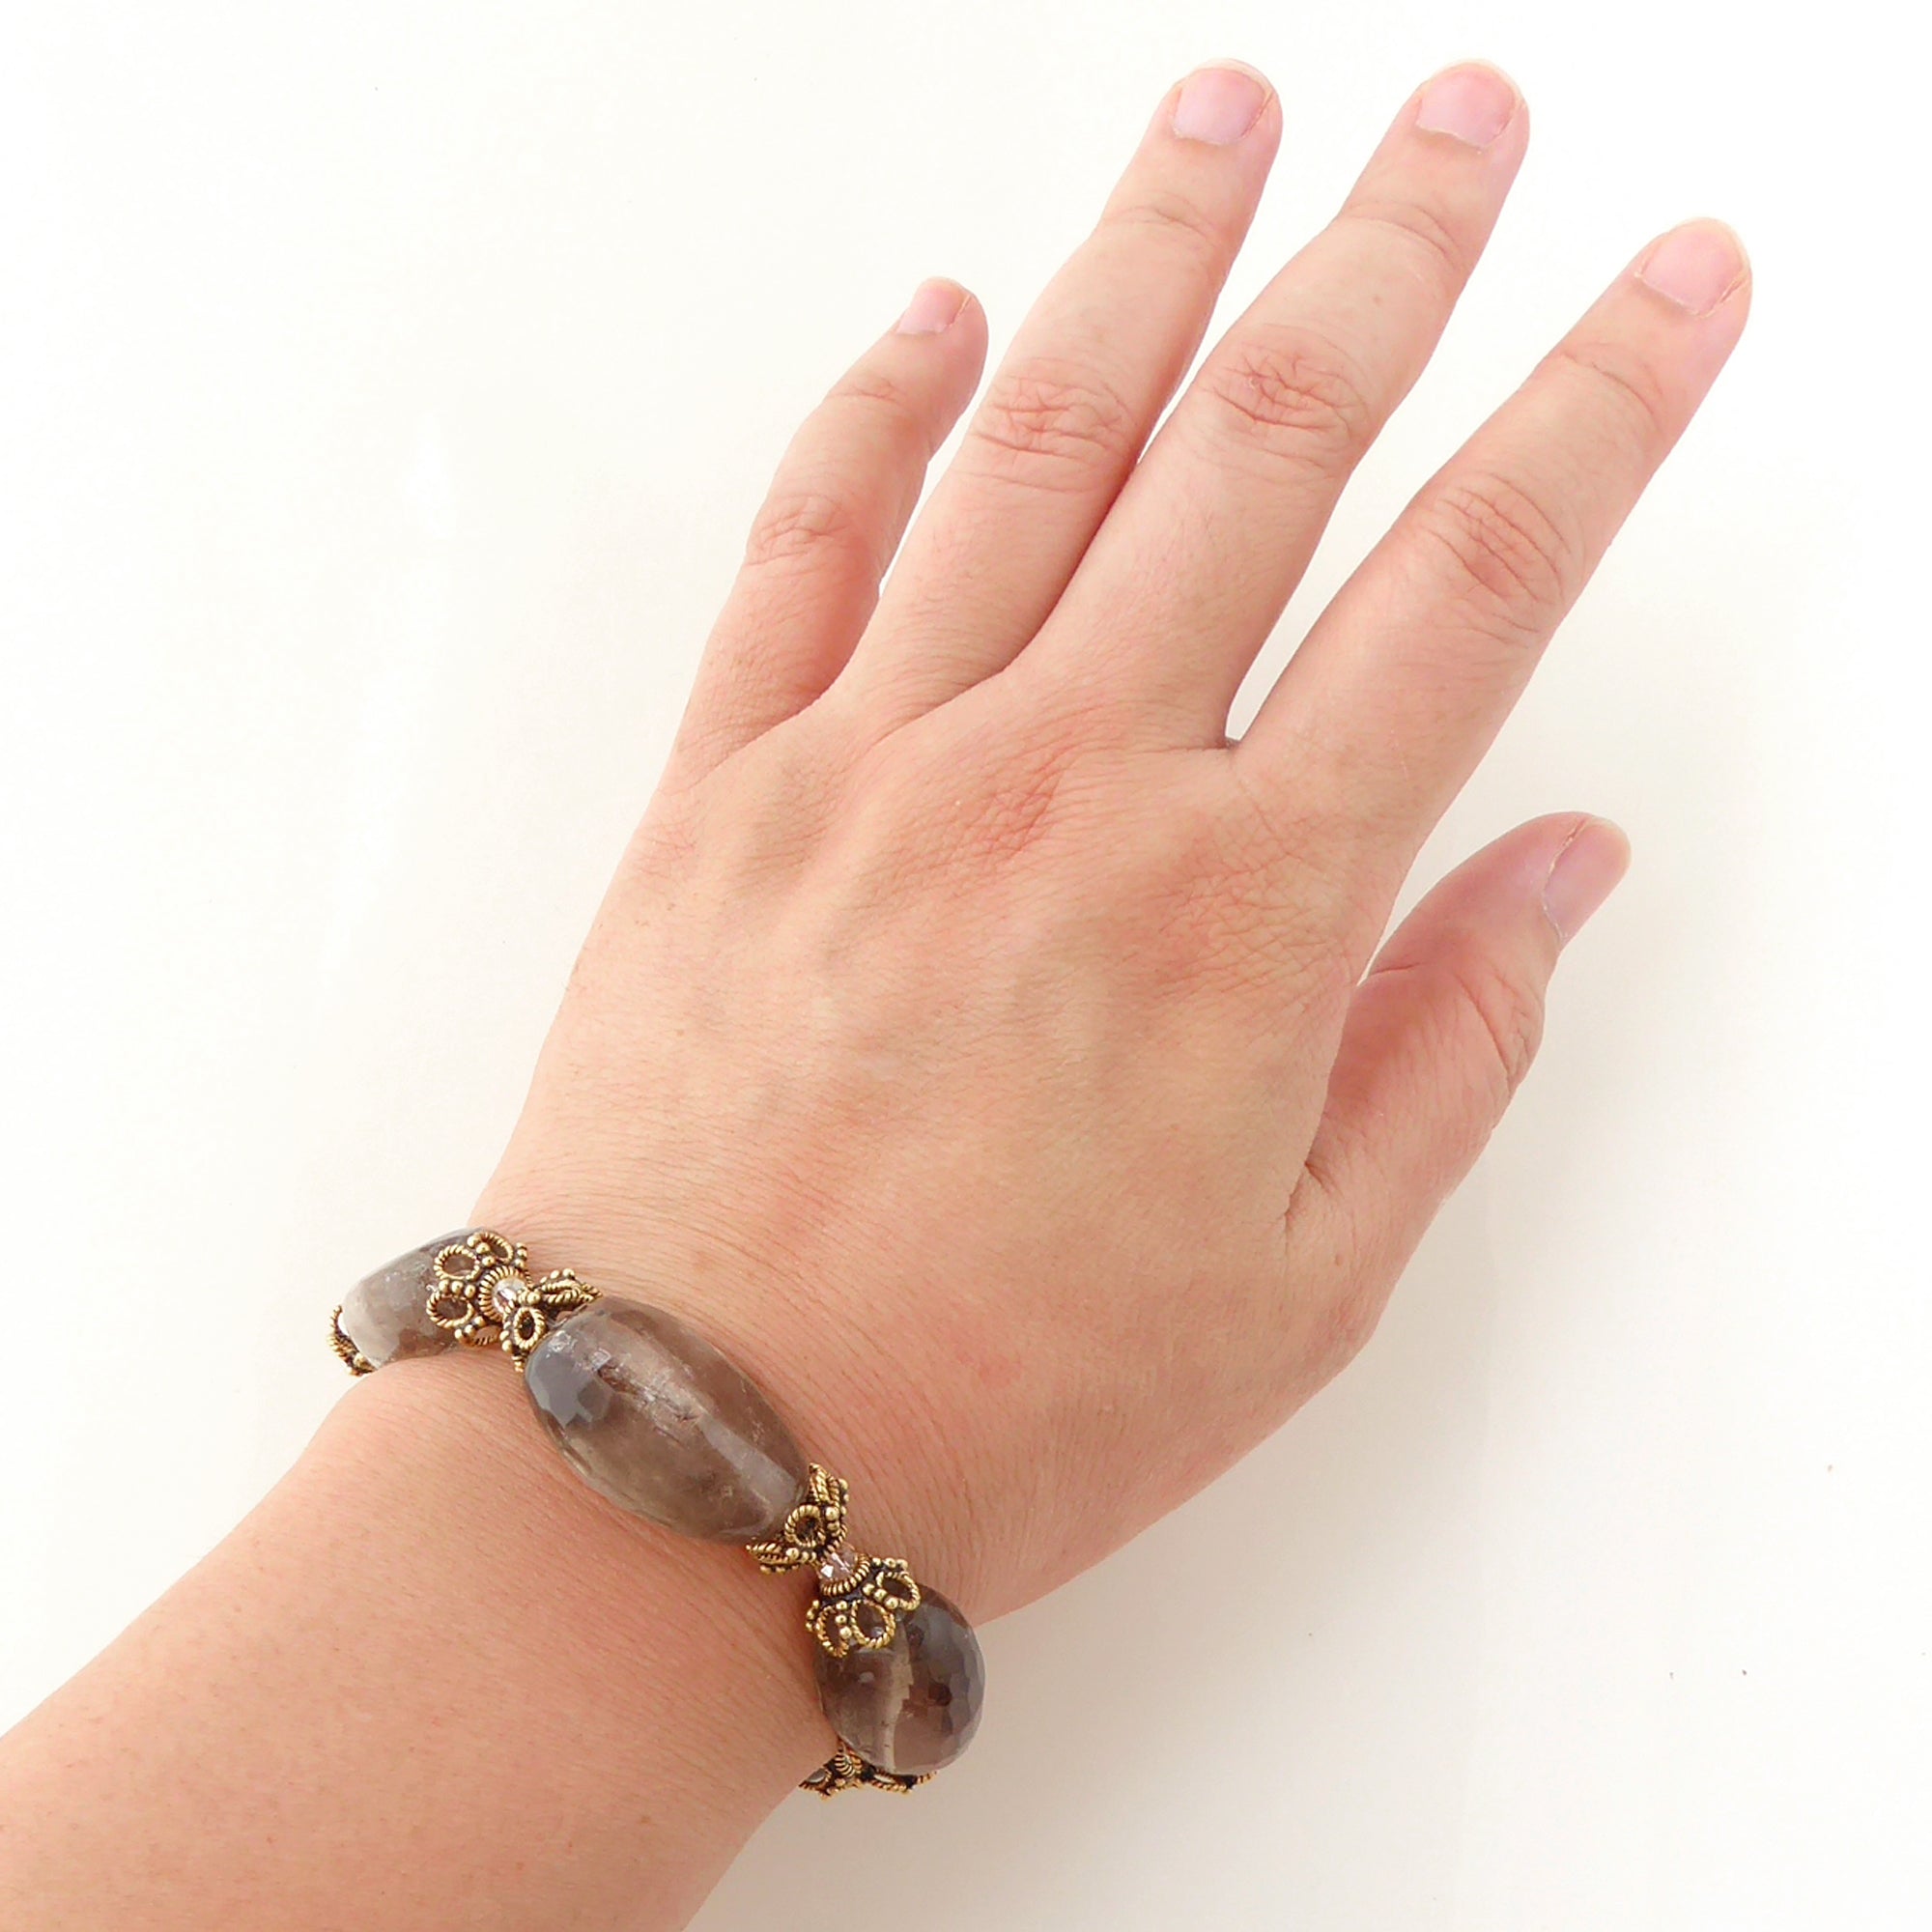 Greige quartz nugget bracelet by Jenny Dayco 5